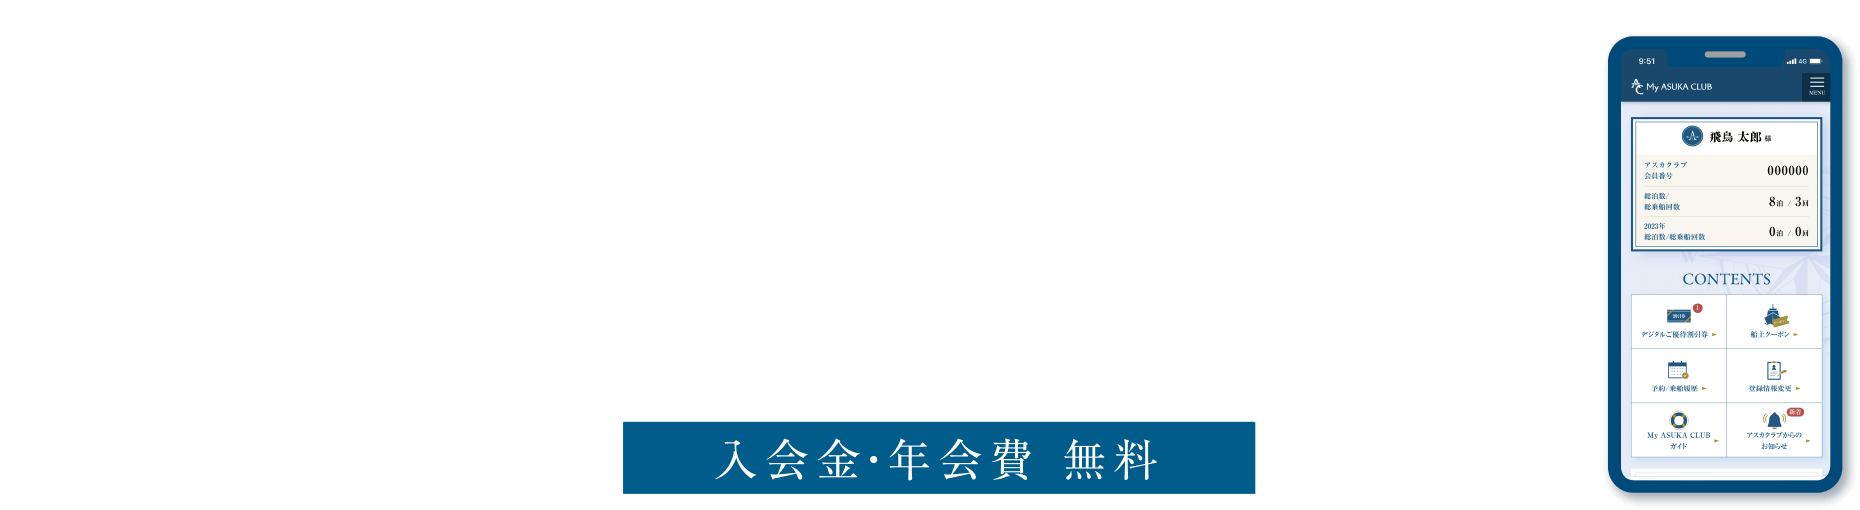 乗船前のご登録がおすすめ アスカクラブ会員サイト My ASUKA CLUB 入会費・年会費 無料